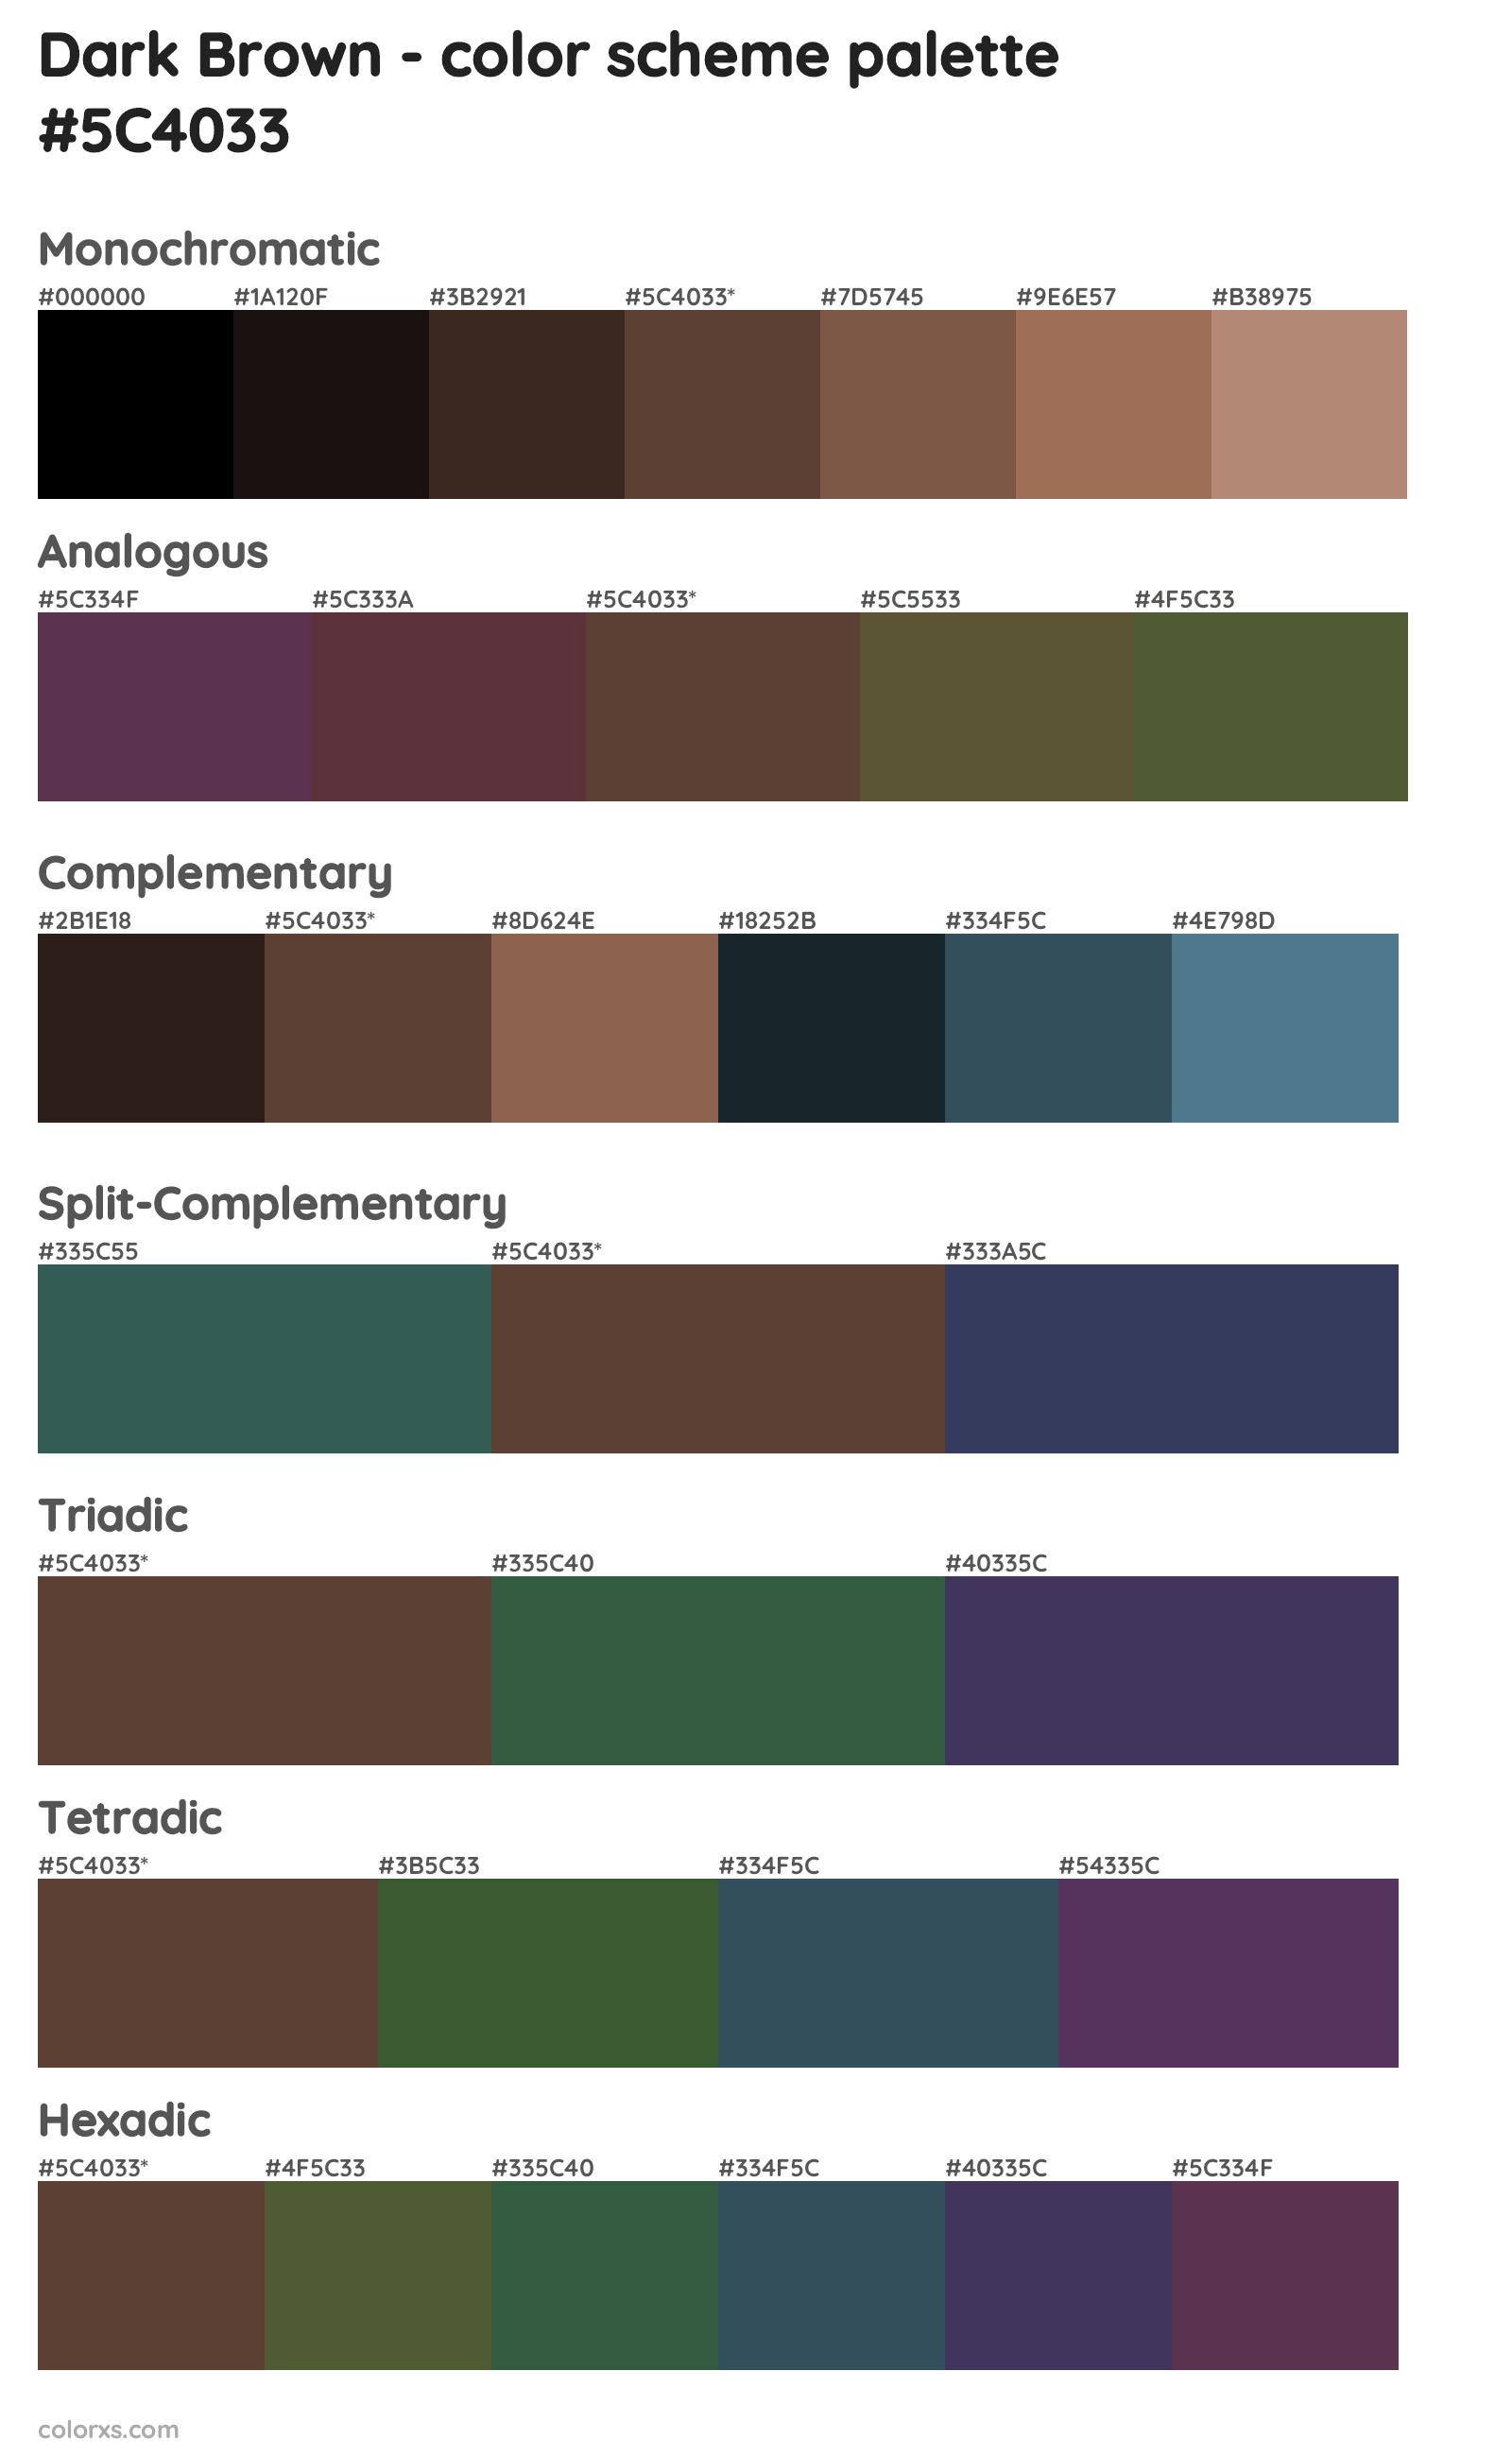 Dark Brown Color Scheme Palettes